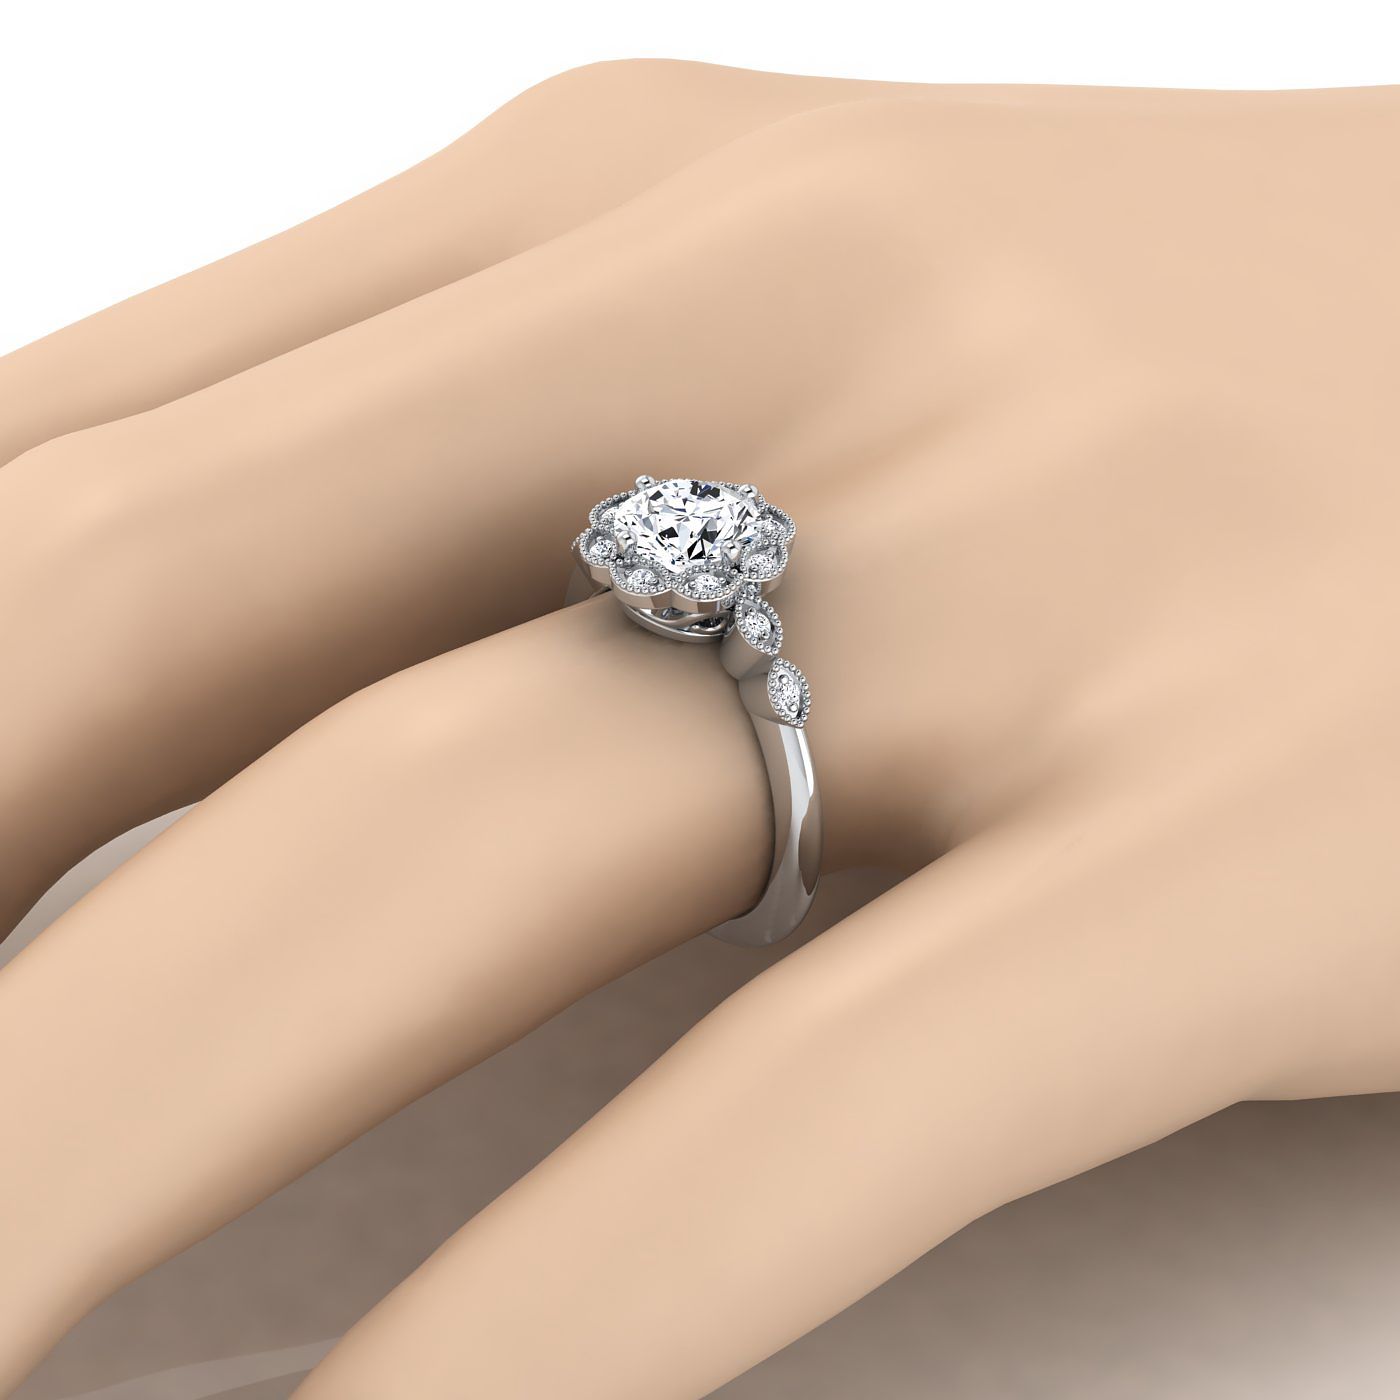 แหวนแพลตตินัมกลมสดใสโบราณประดับด้วยลูกปัดดอกไม้รัศมีและแหวนหมั้นใบไม้ -3/8ctw